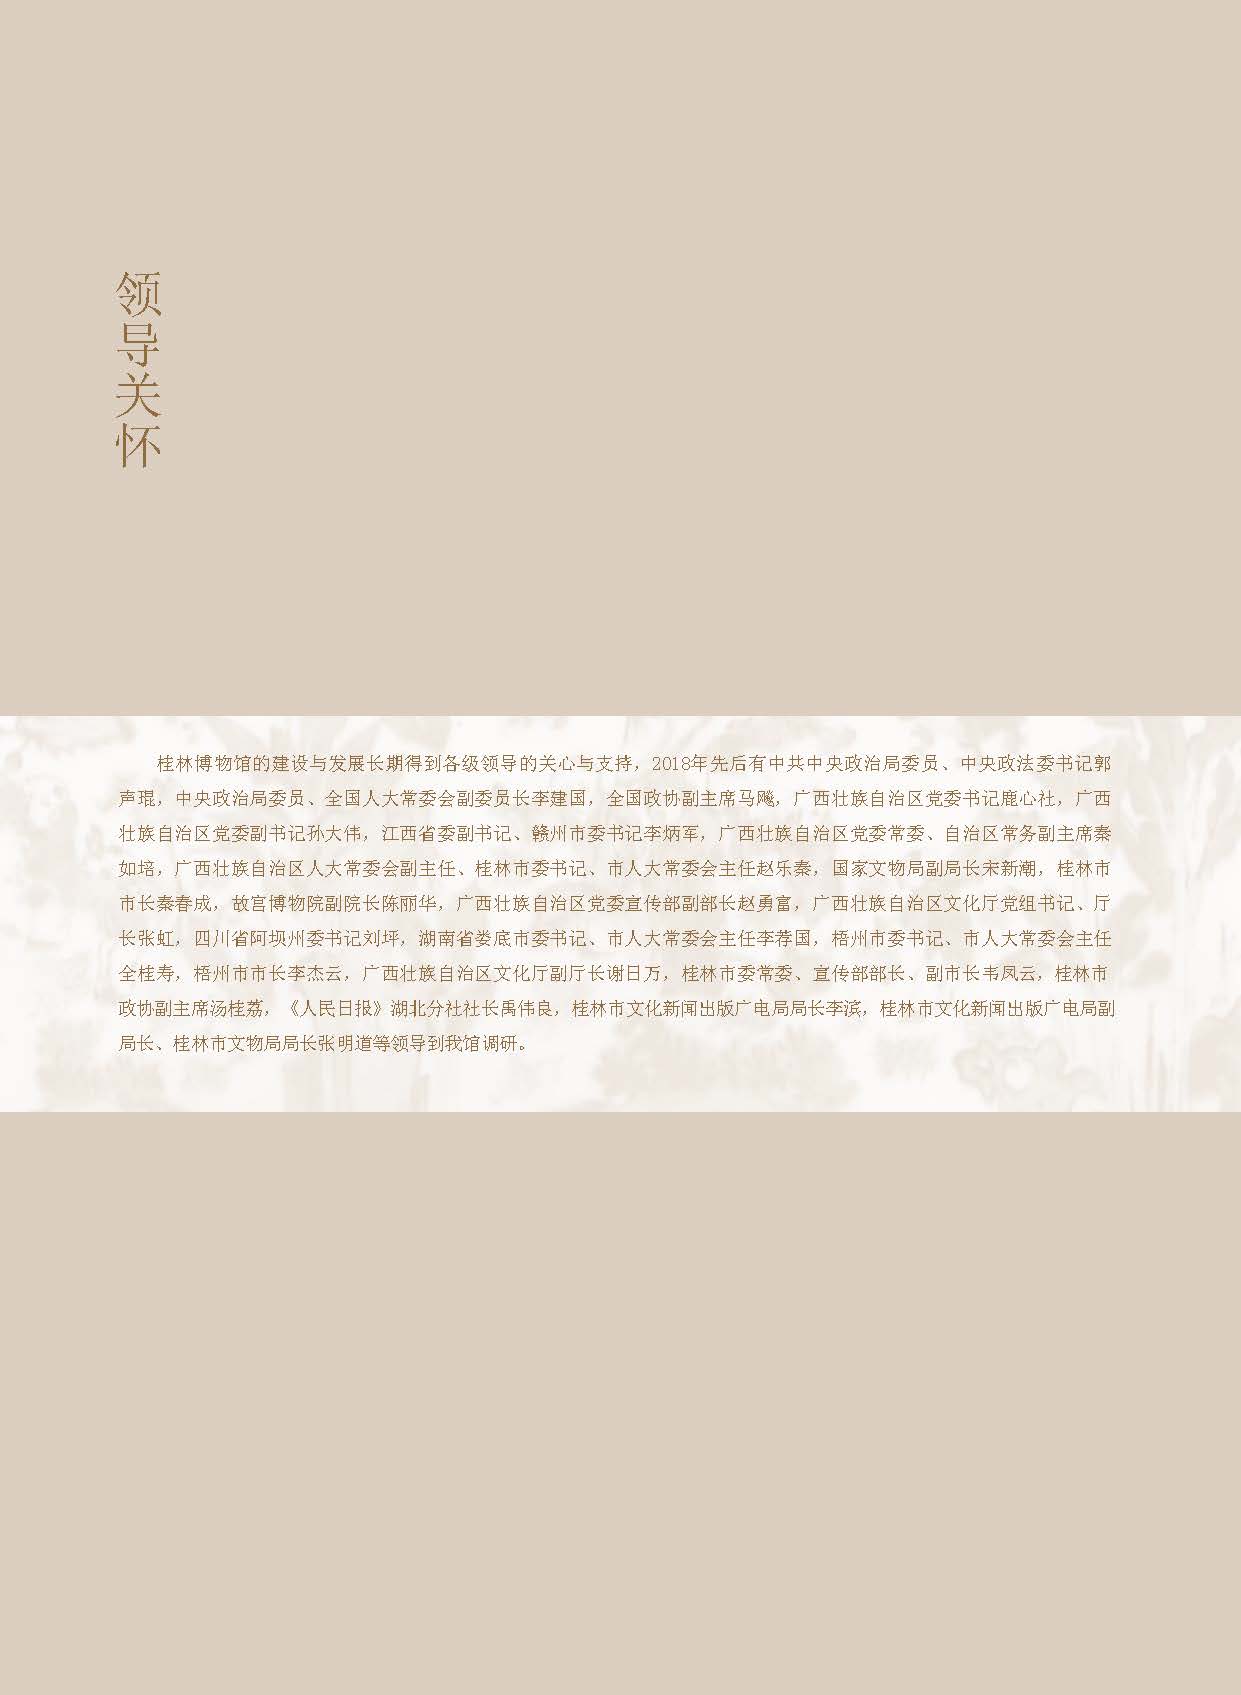 桂林博物馆2018年度报告.pdf_页面_004.jpg